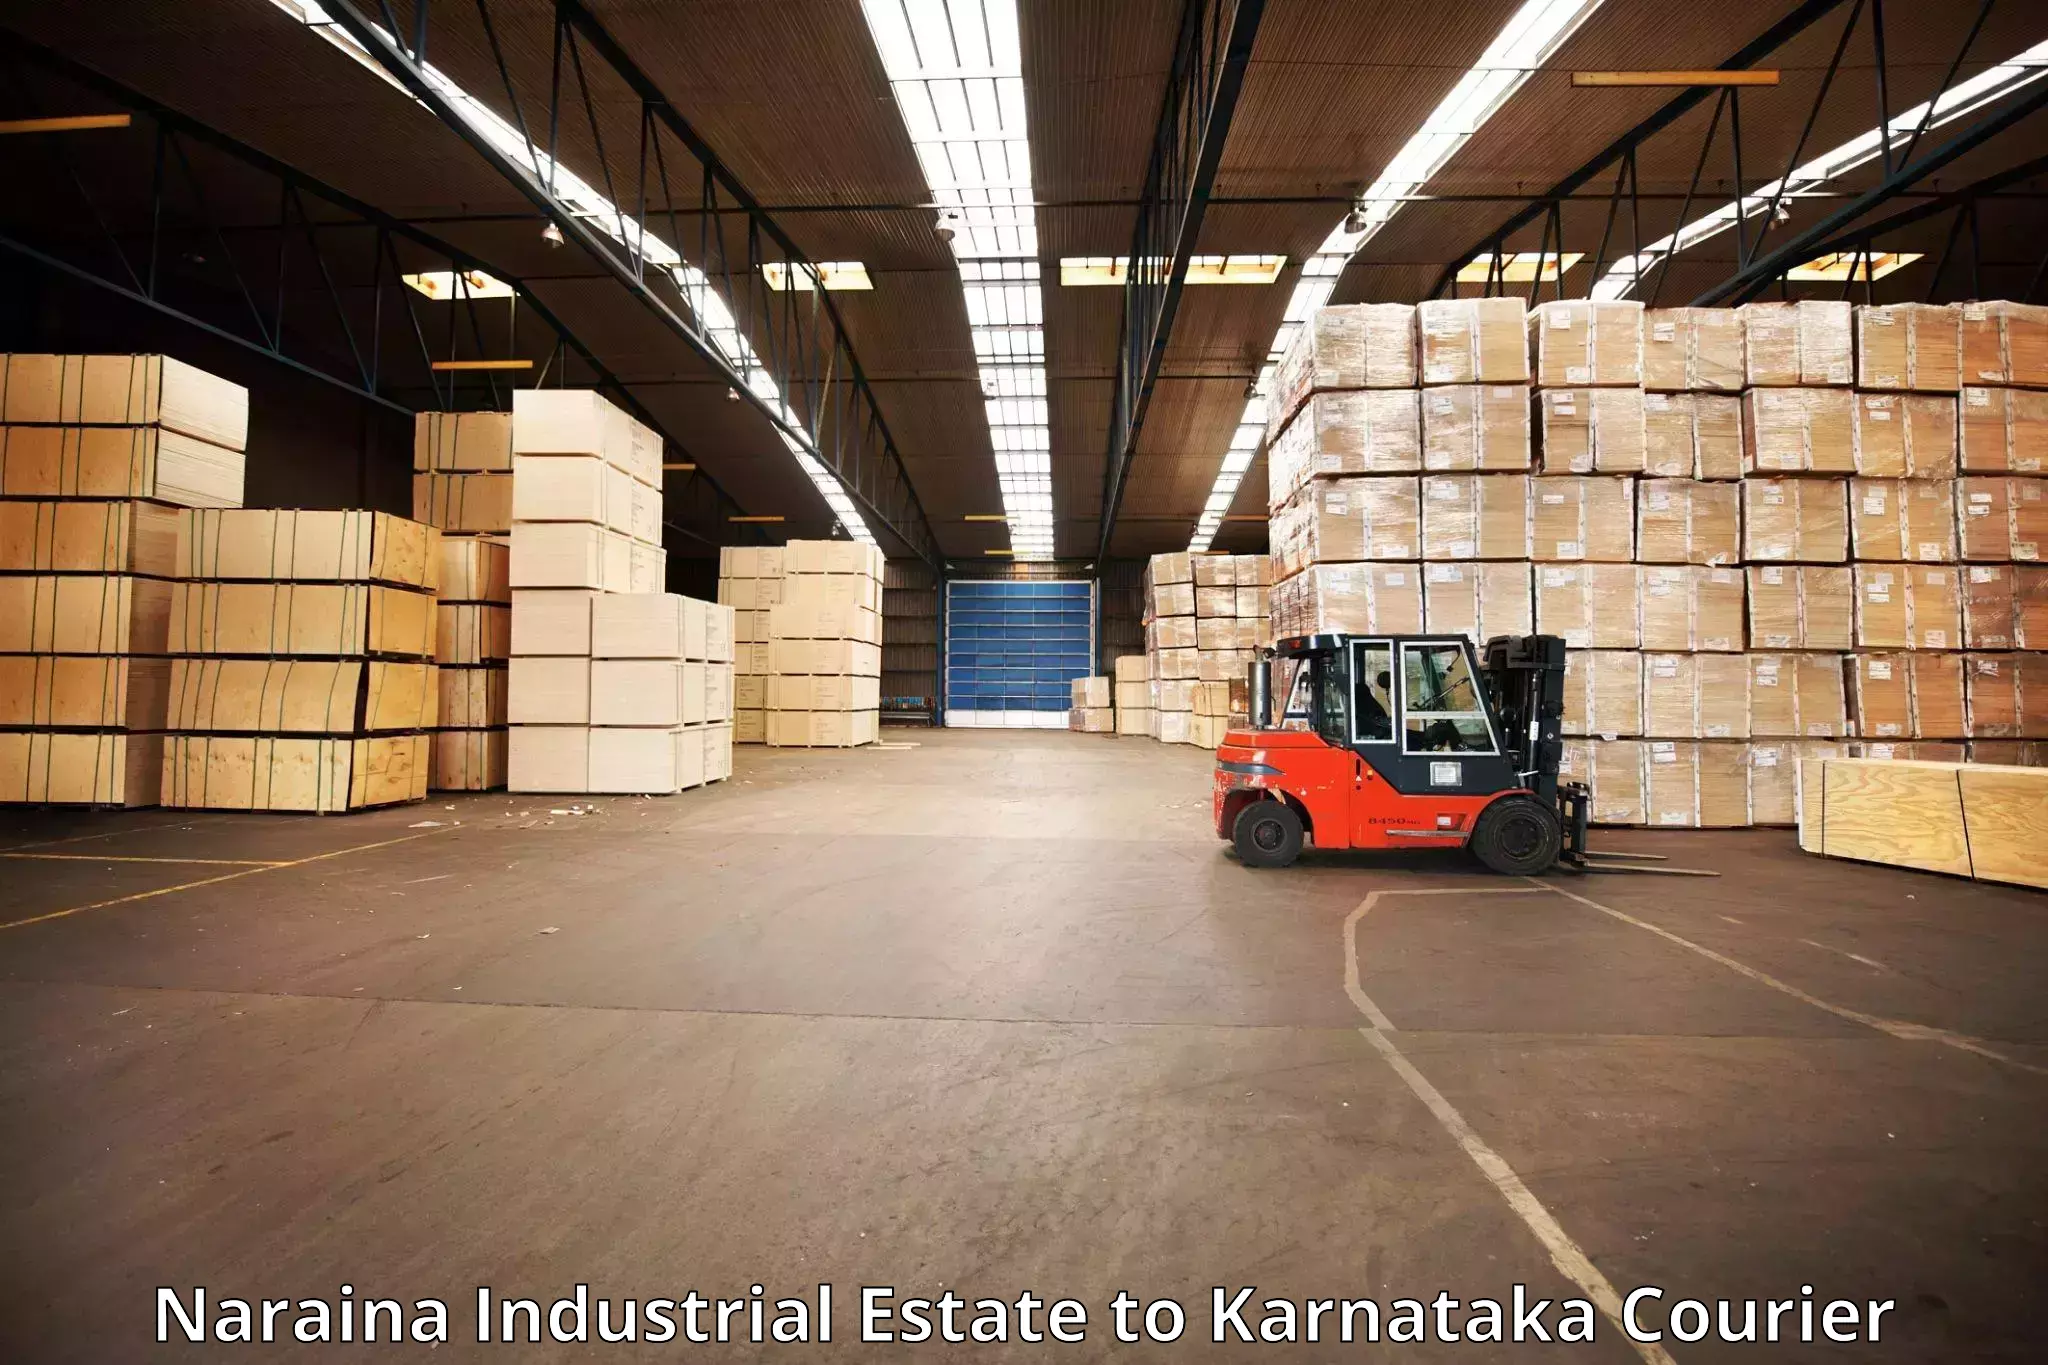 Baggage transport scheduler Naraina Industrial Estate to Karnataka